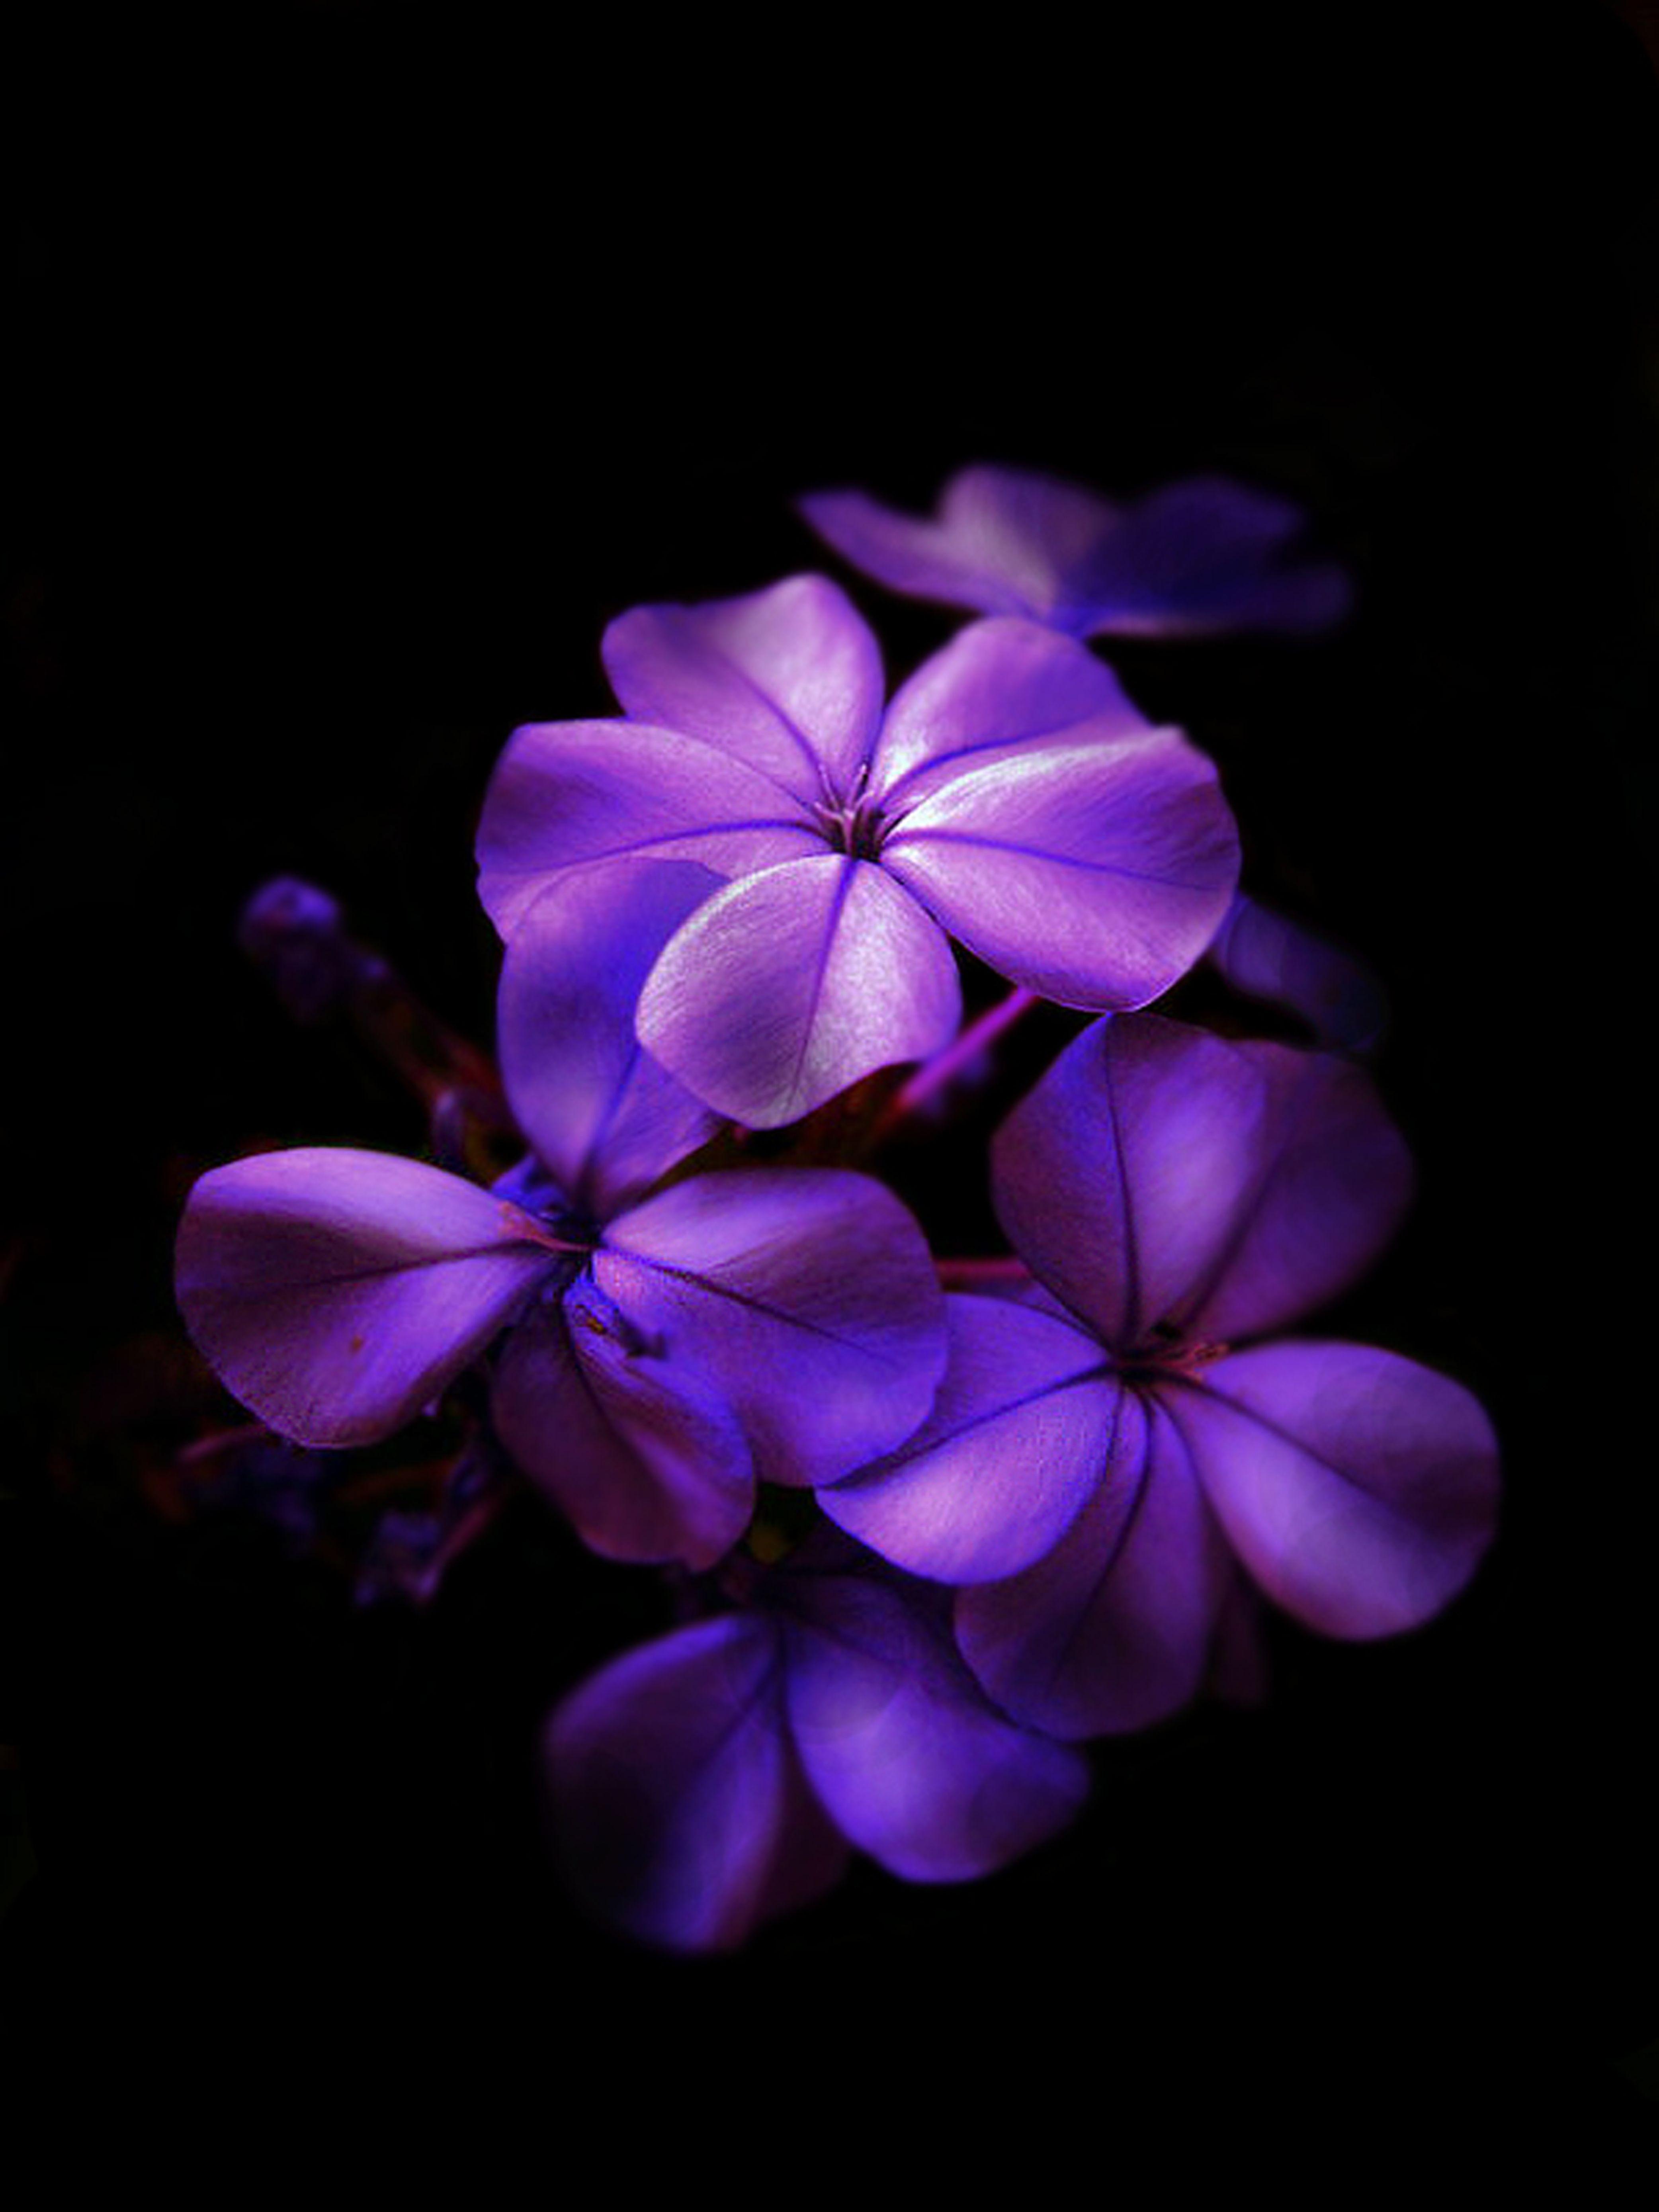 Hoa tím đậm là một loài hoa với màu sắc rực rỡ cùng với nhiều ý nghĩa khác nhau. Để hiểu thêm về sức mạnh và cá tính của hoa tím đậm, hãy xem hình ảnh về loài hoa đầy sức hút này.